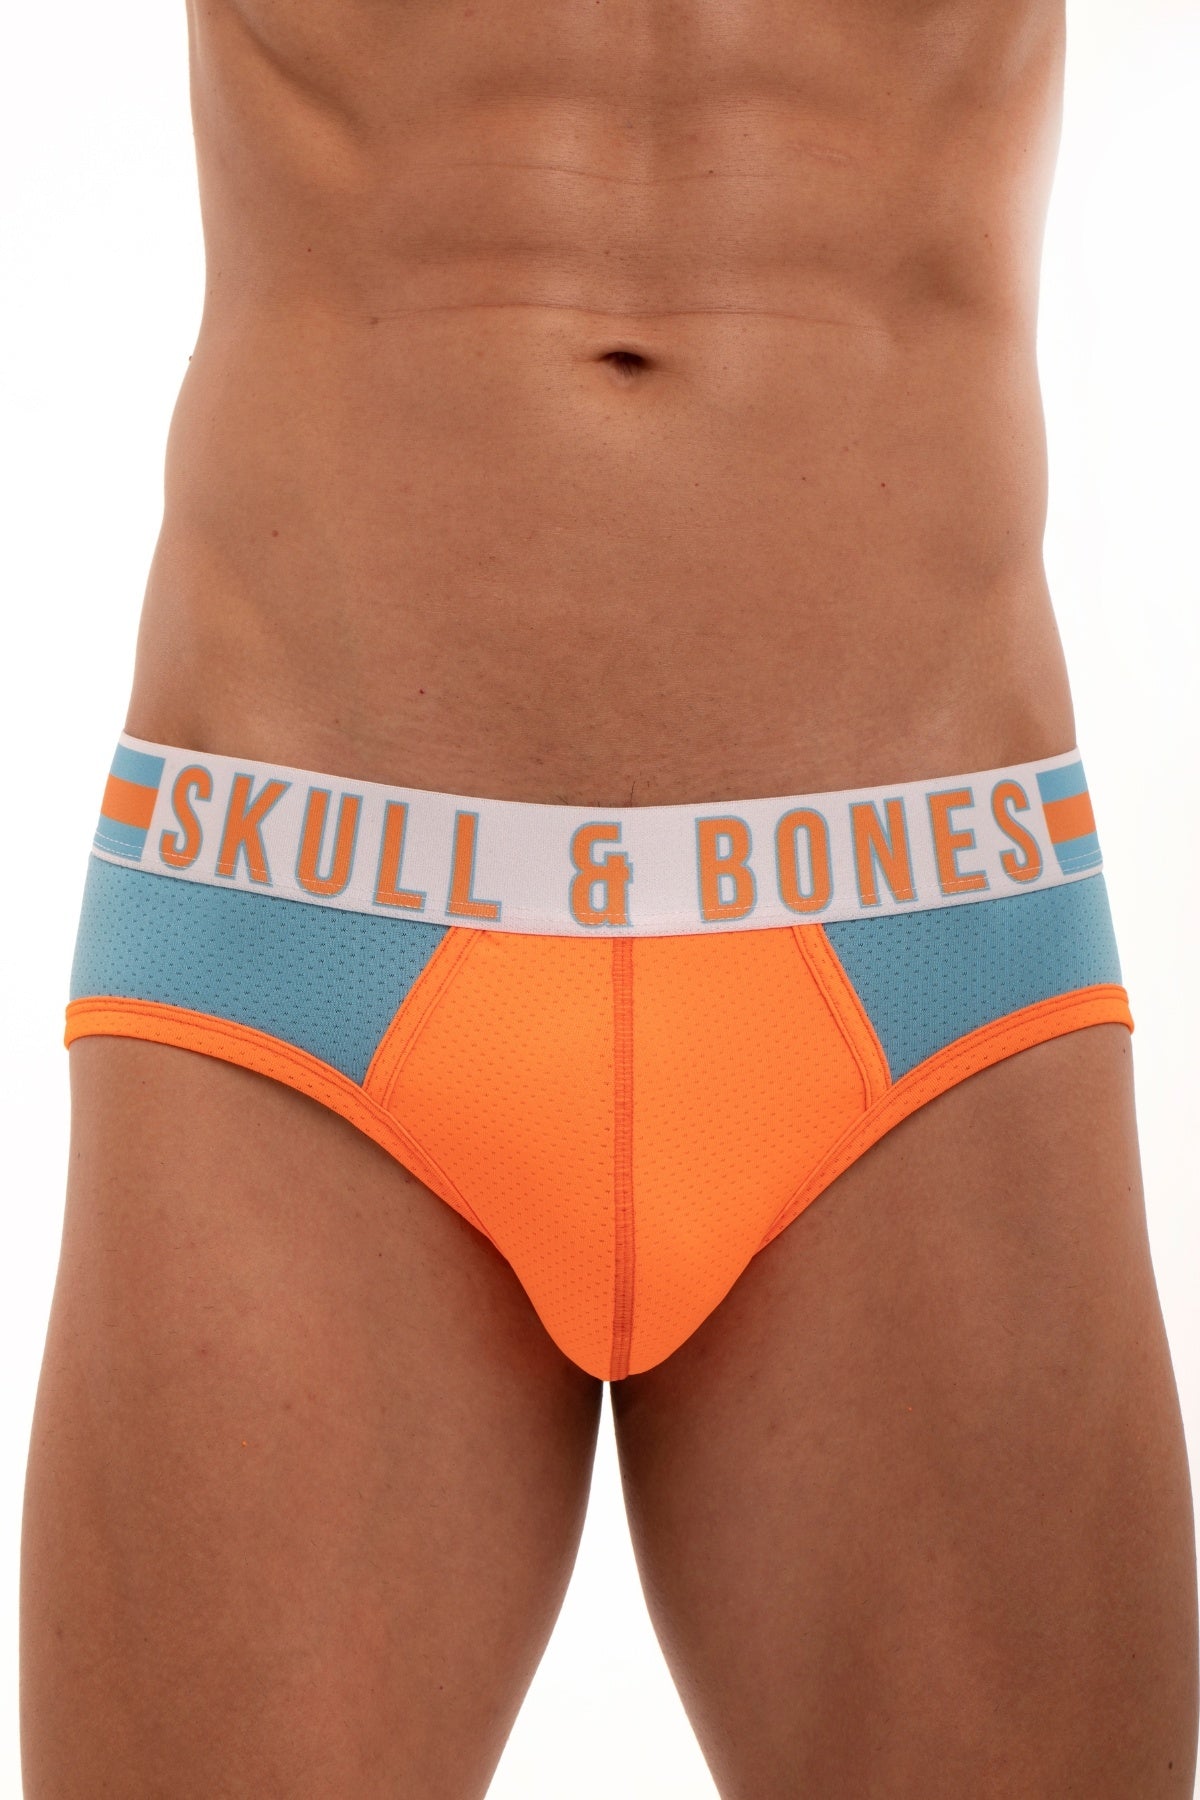 Skull and Bones Blue and Orange Sport Mesh Brief